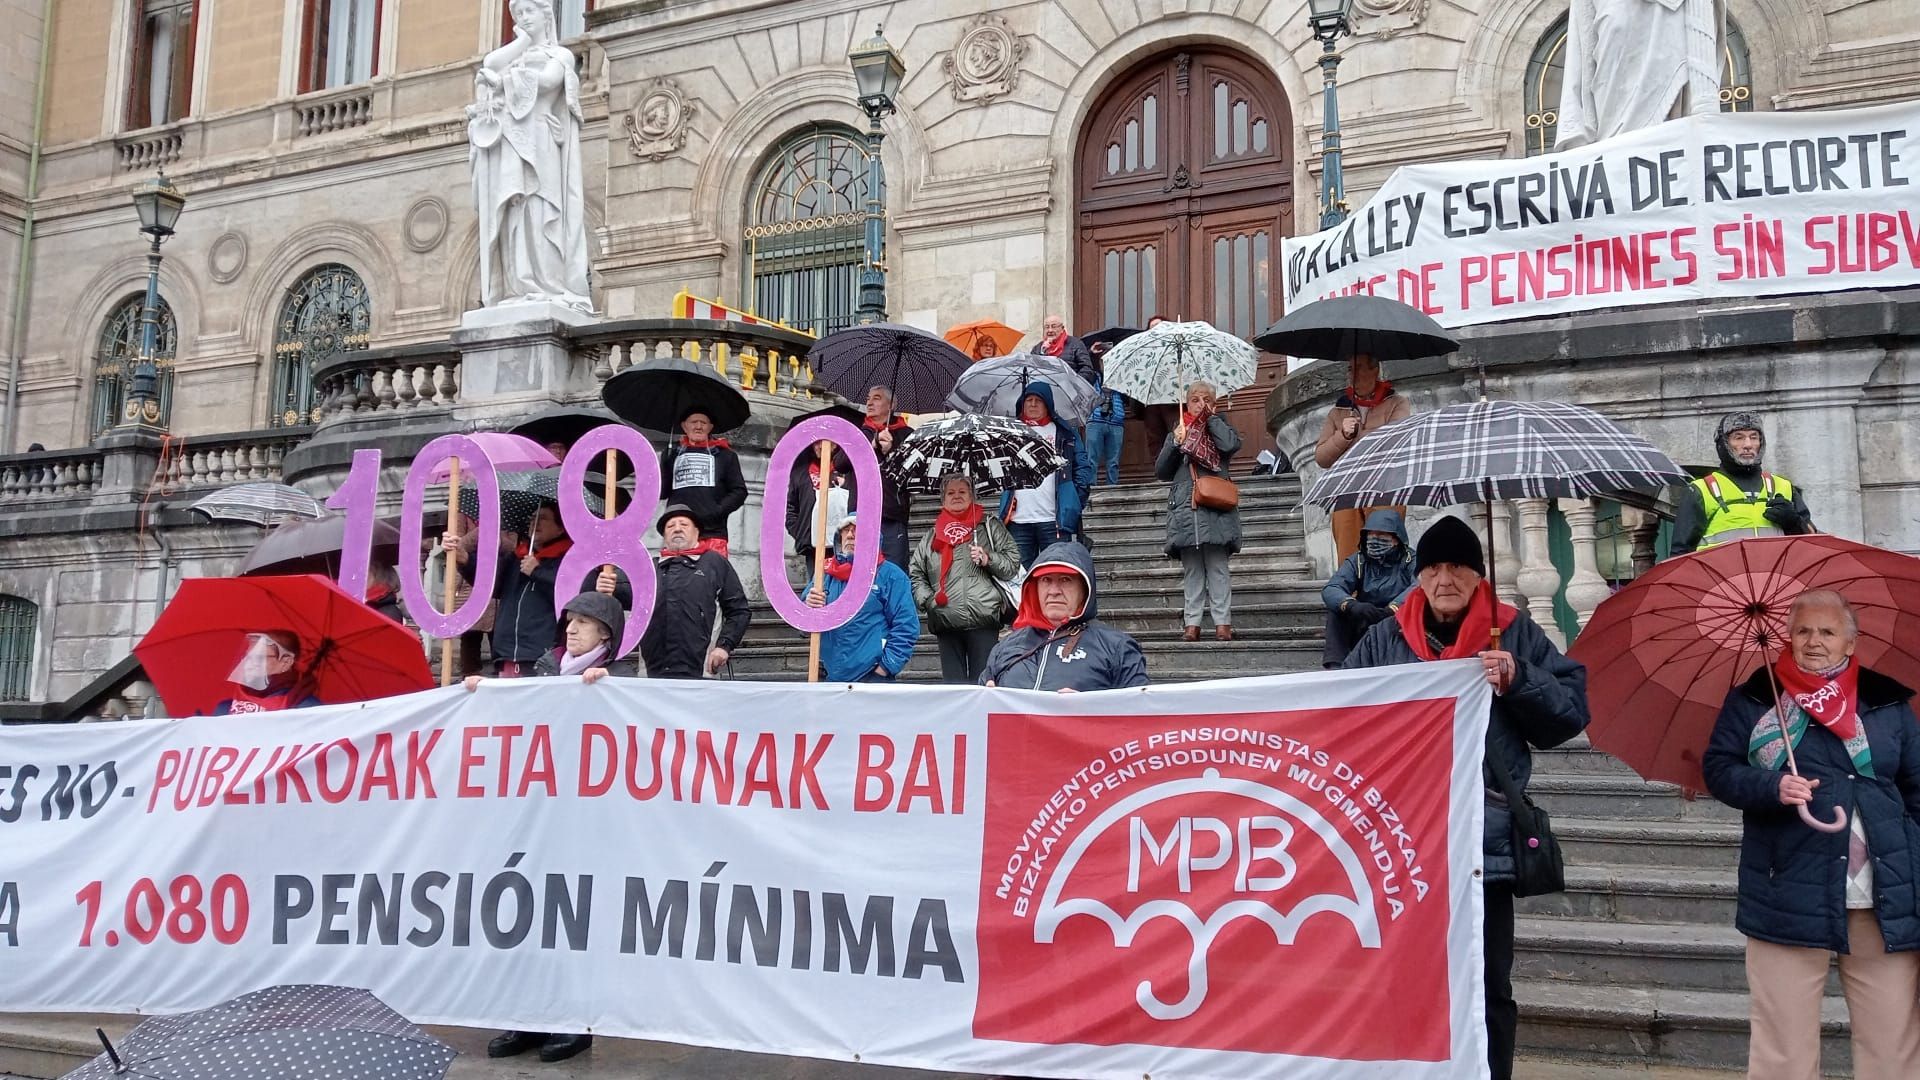 Los pensionistas vascos convocan una semana de protestas para exigir 1.080 euros de pensión mínima